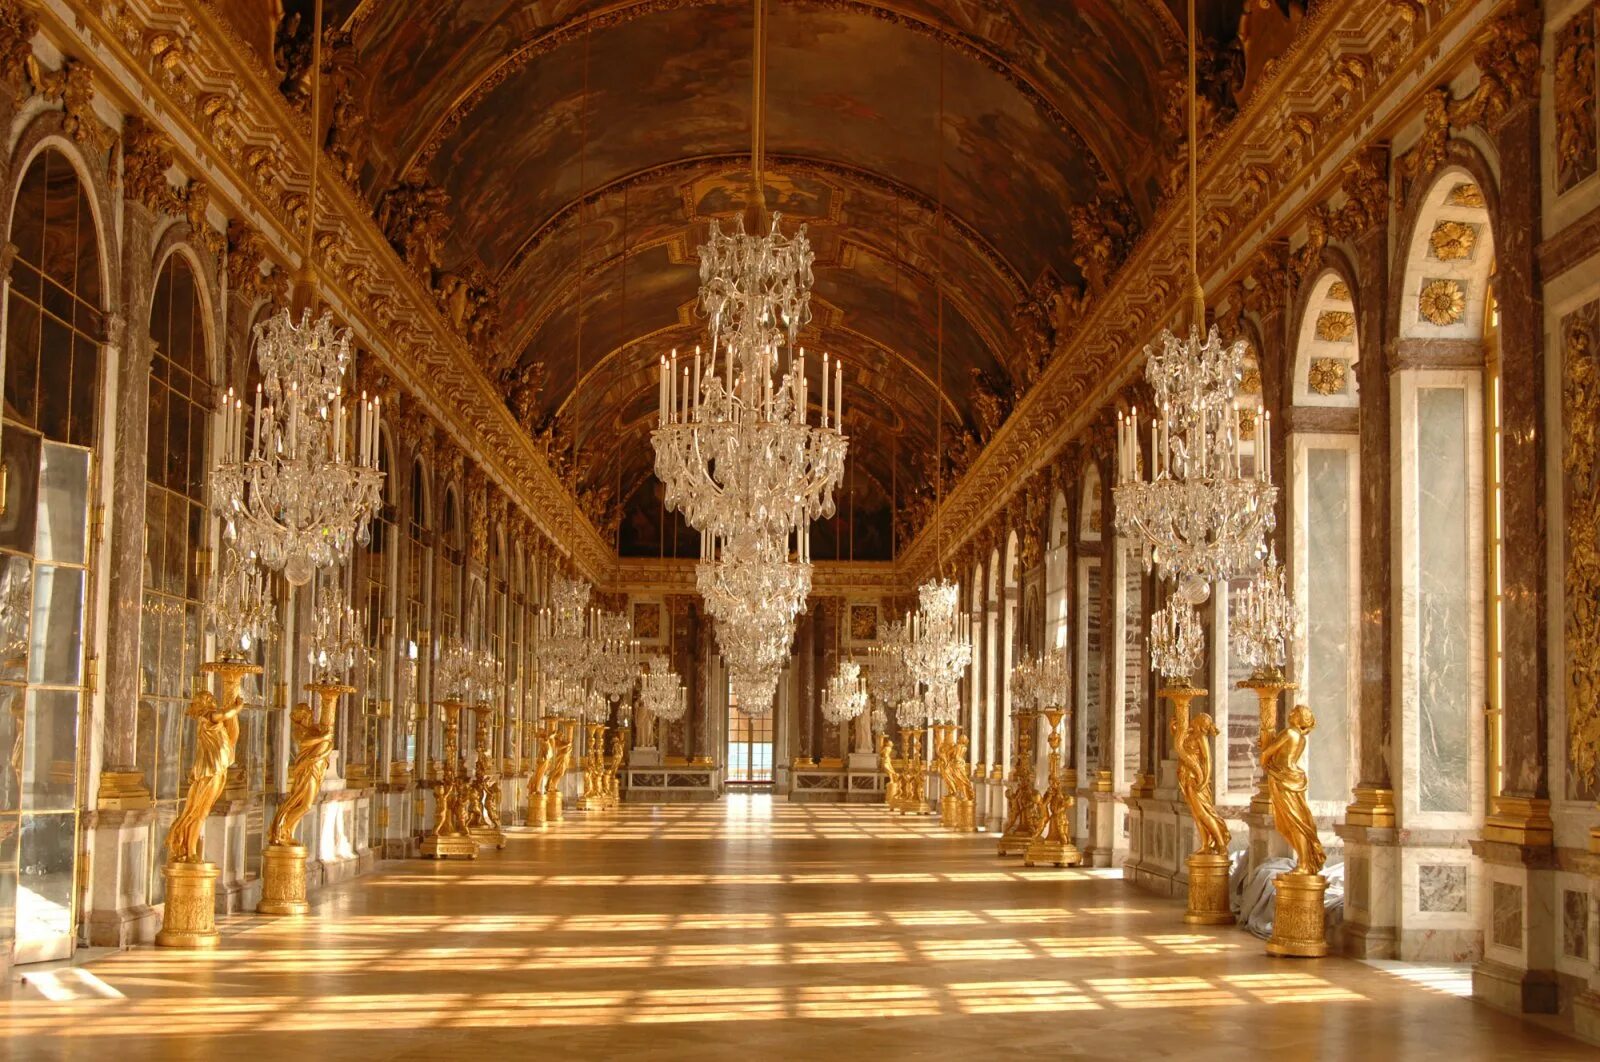 Сказочный версаль. Версальский дворец, Версаль дворец Версаля. Версальский дворец Барокко. Версальский дворец Анфилада залов. Зеркальная галерея Версальского дворца.